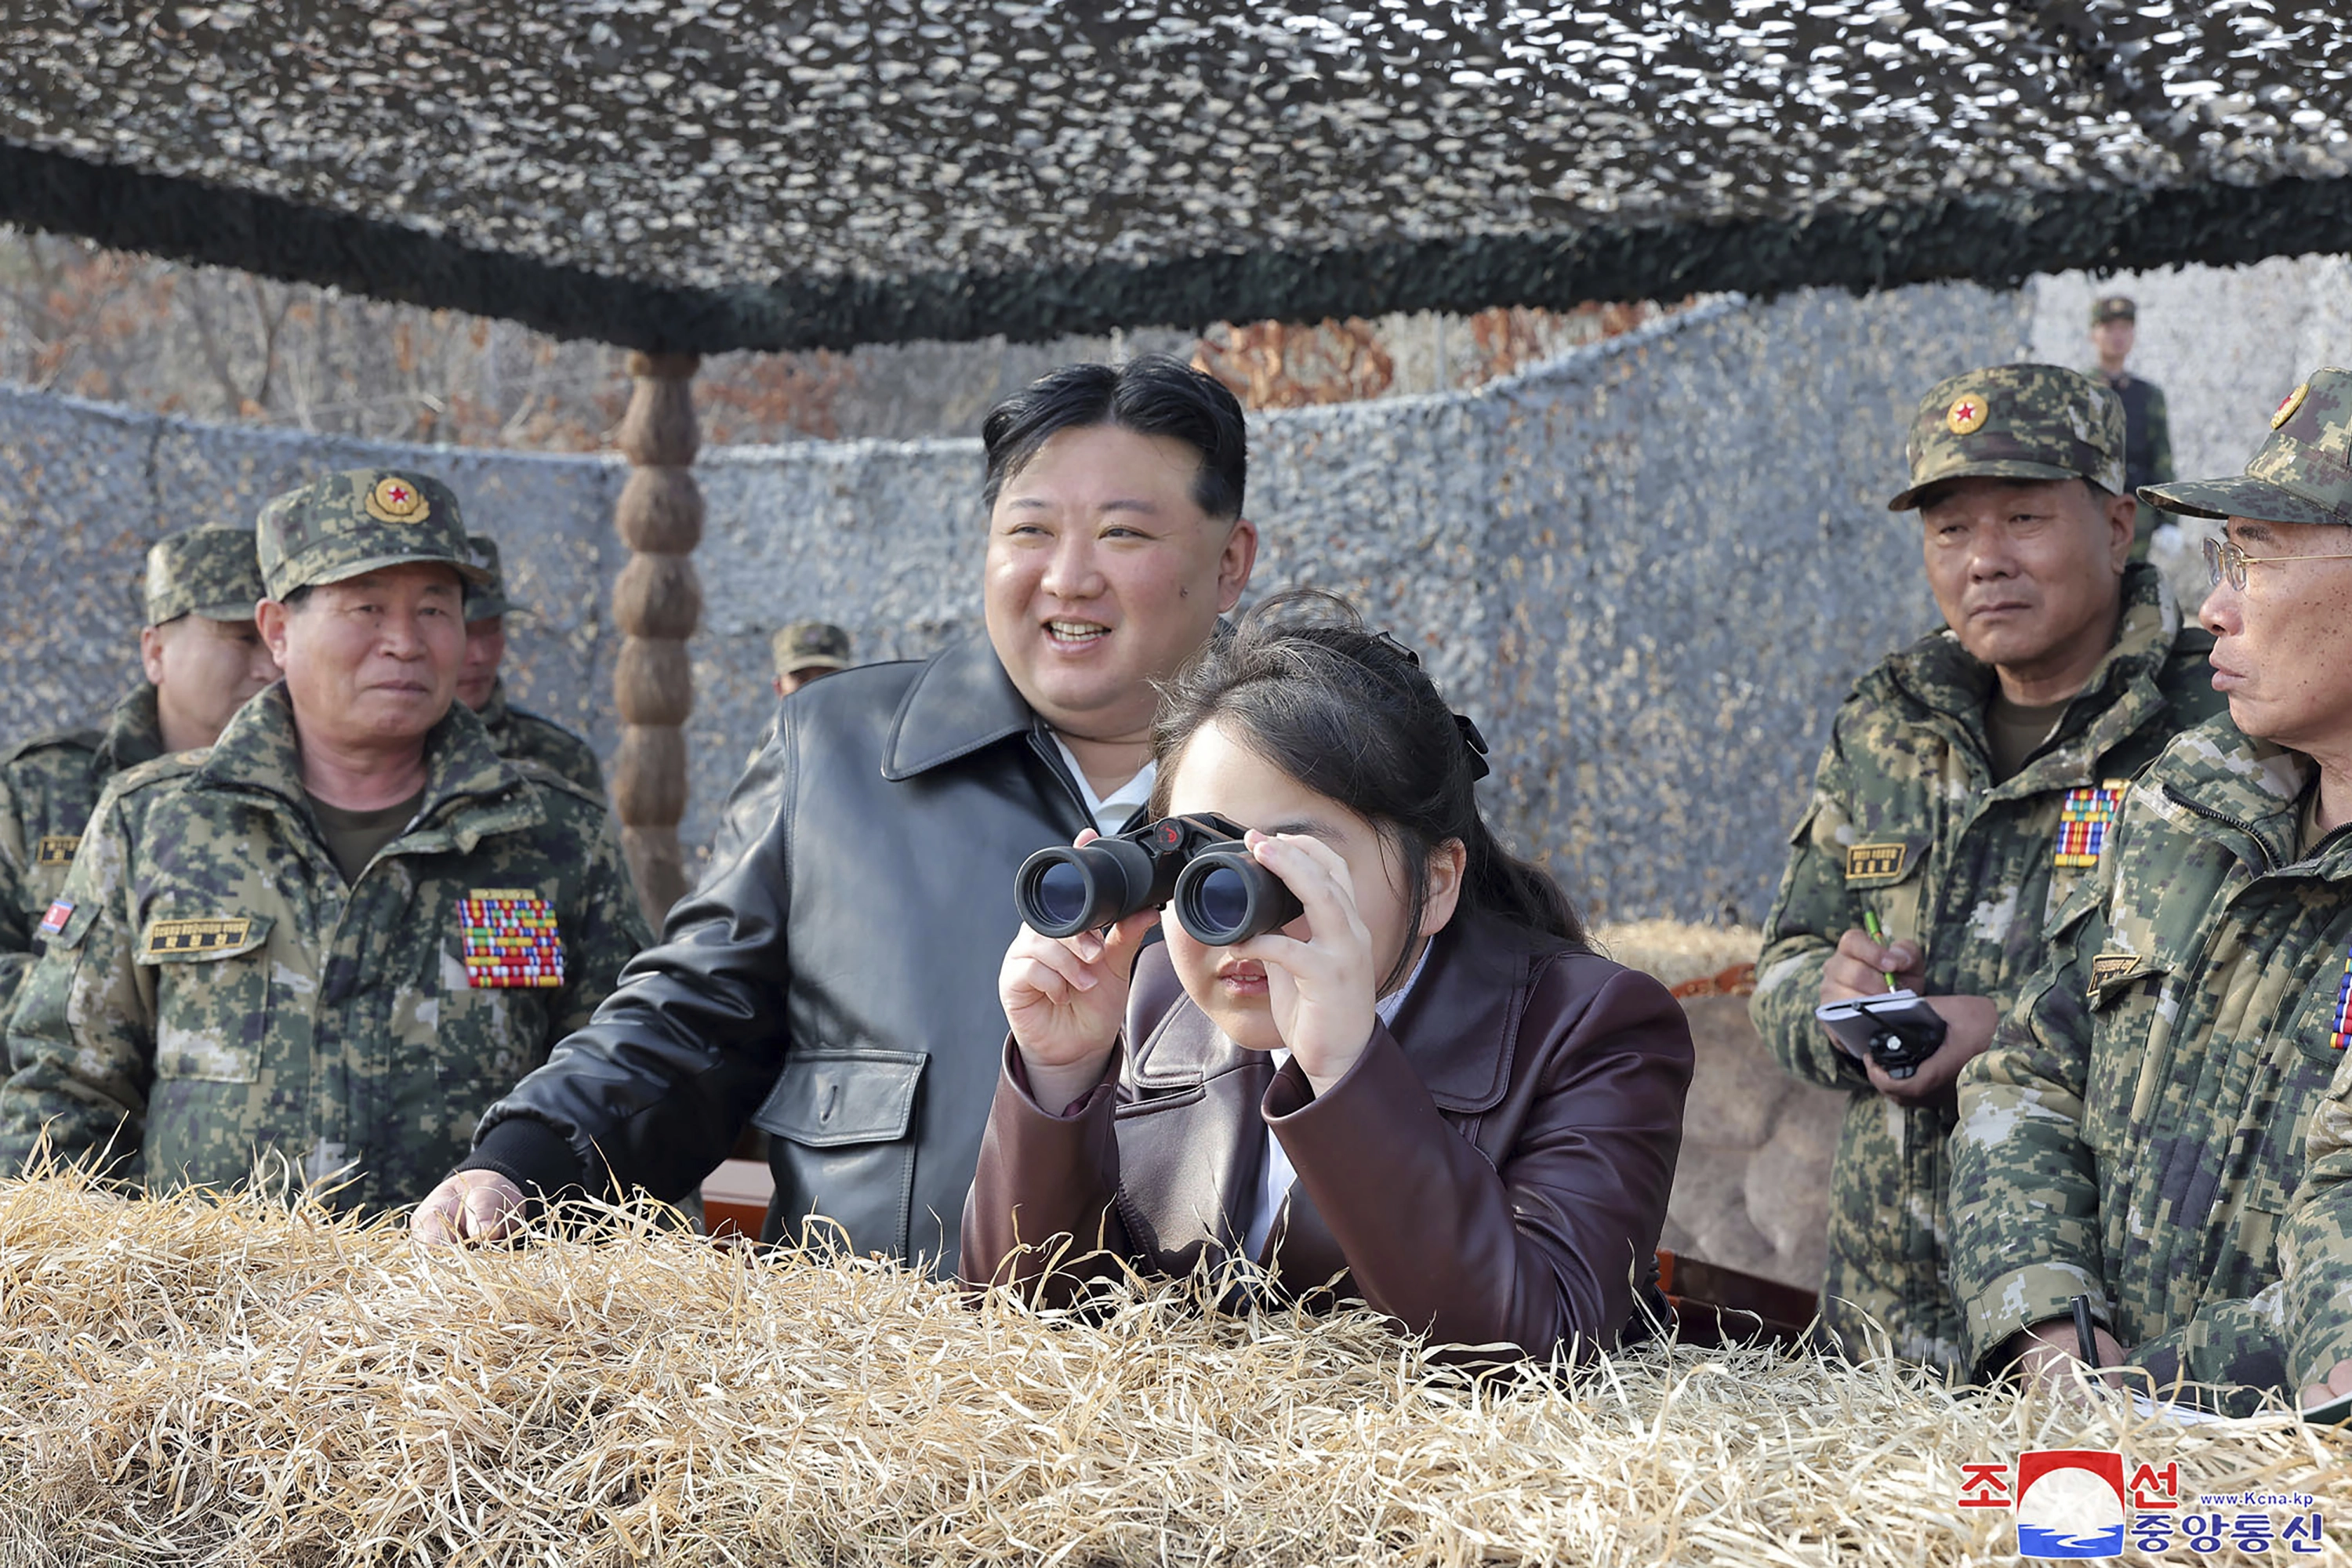 El último éxito musical en Corea del Norte es este surrealista vídeo de Kim Jong-un